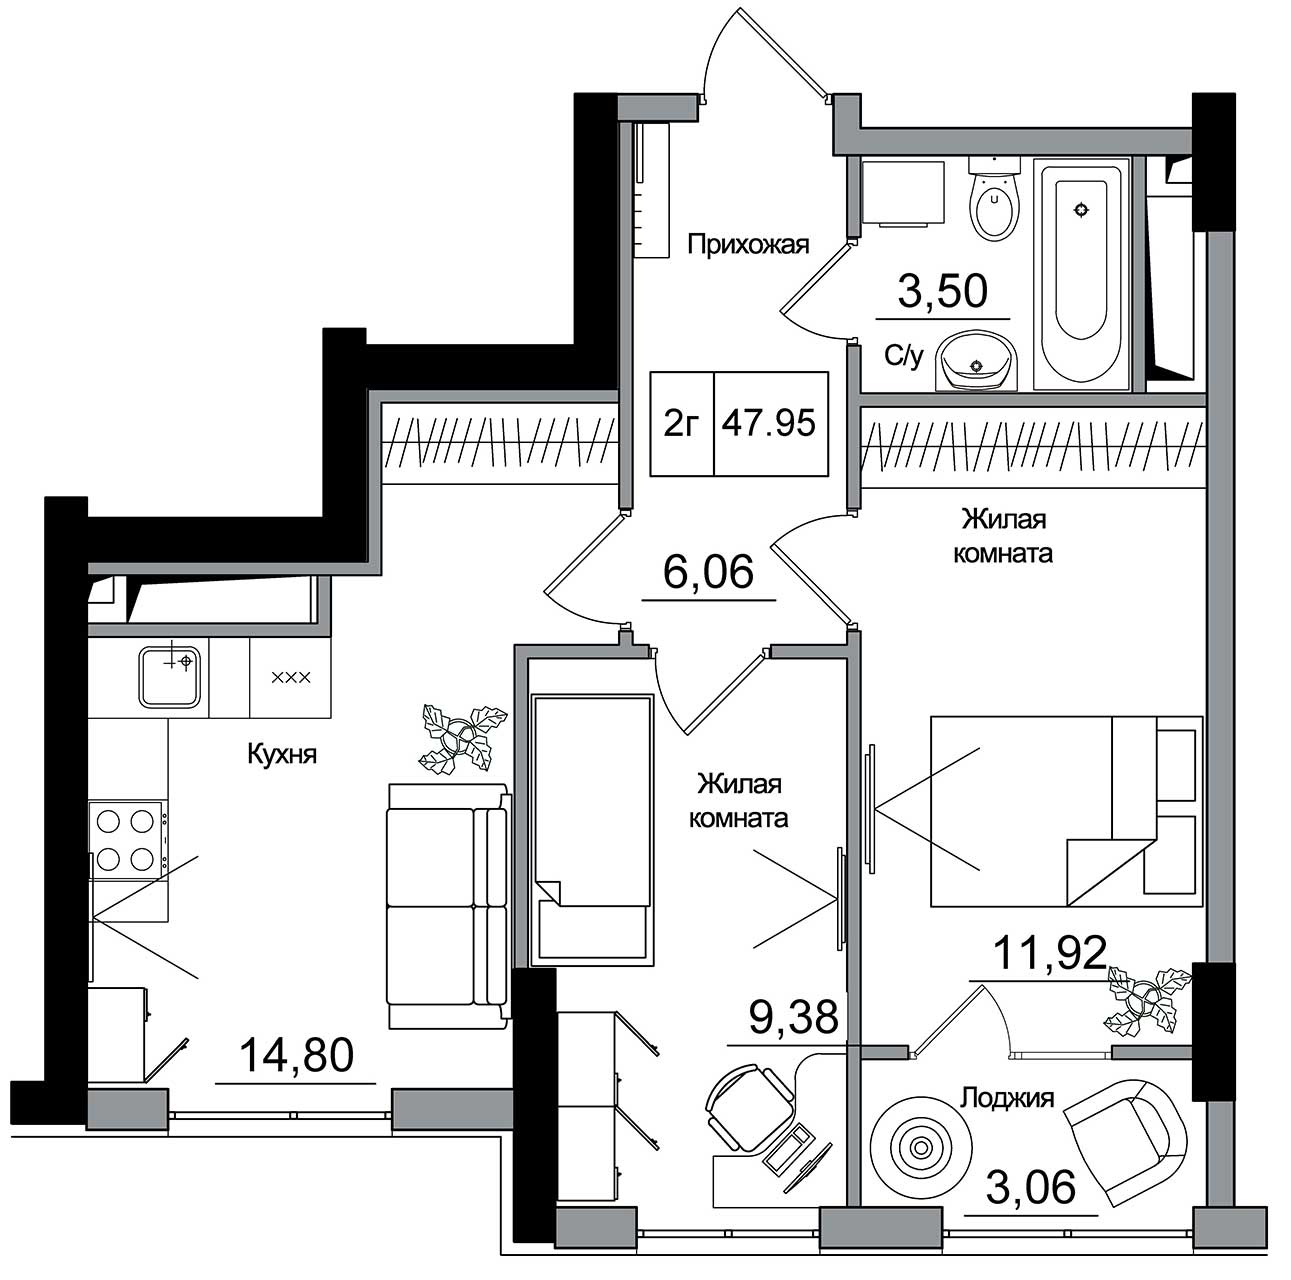 Планировка 2-к квартира площей 47.95м2, AB-16-05/00014.